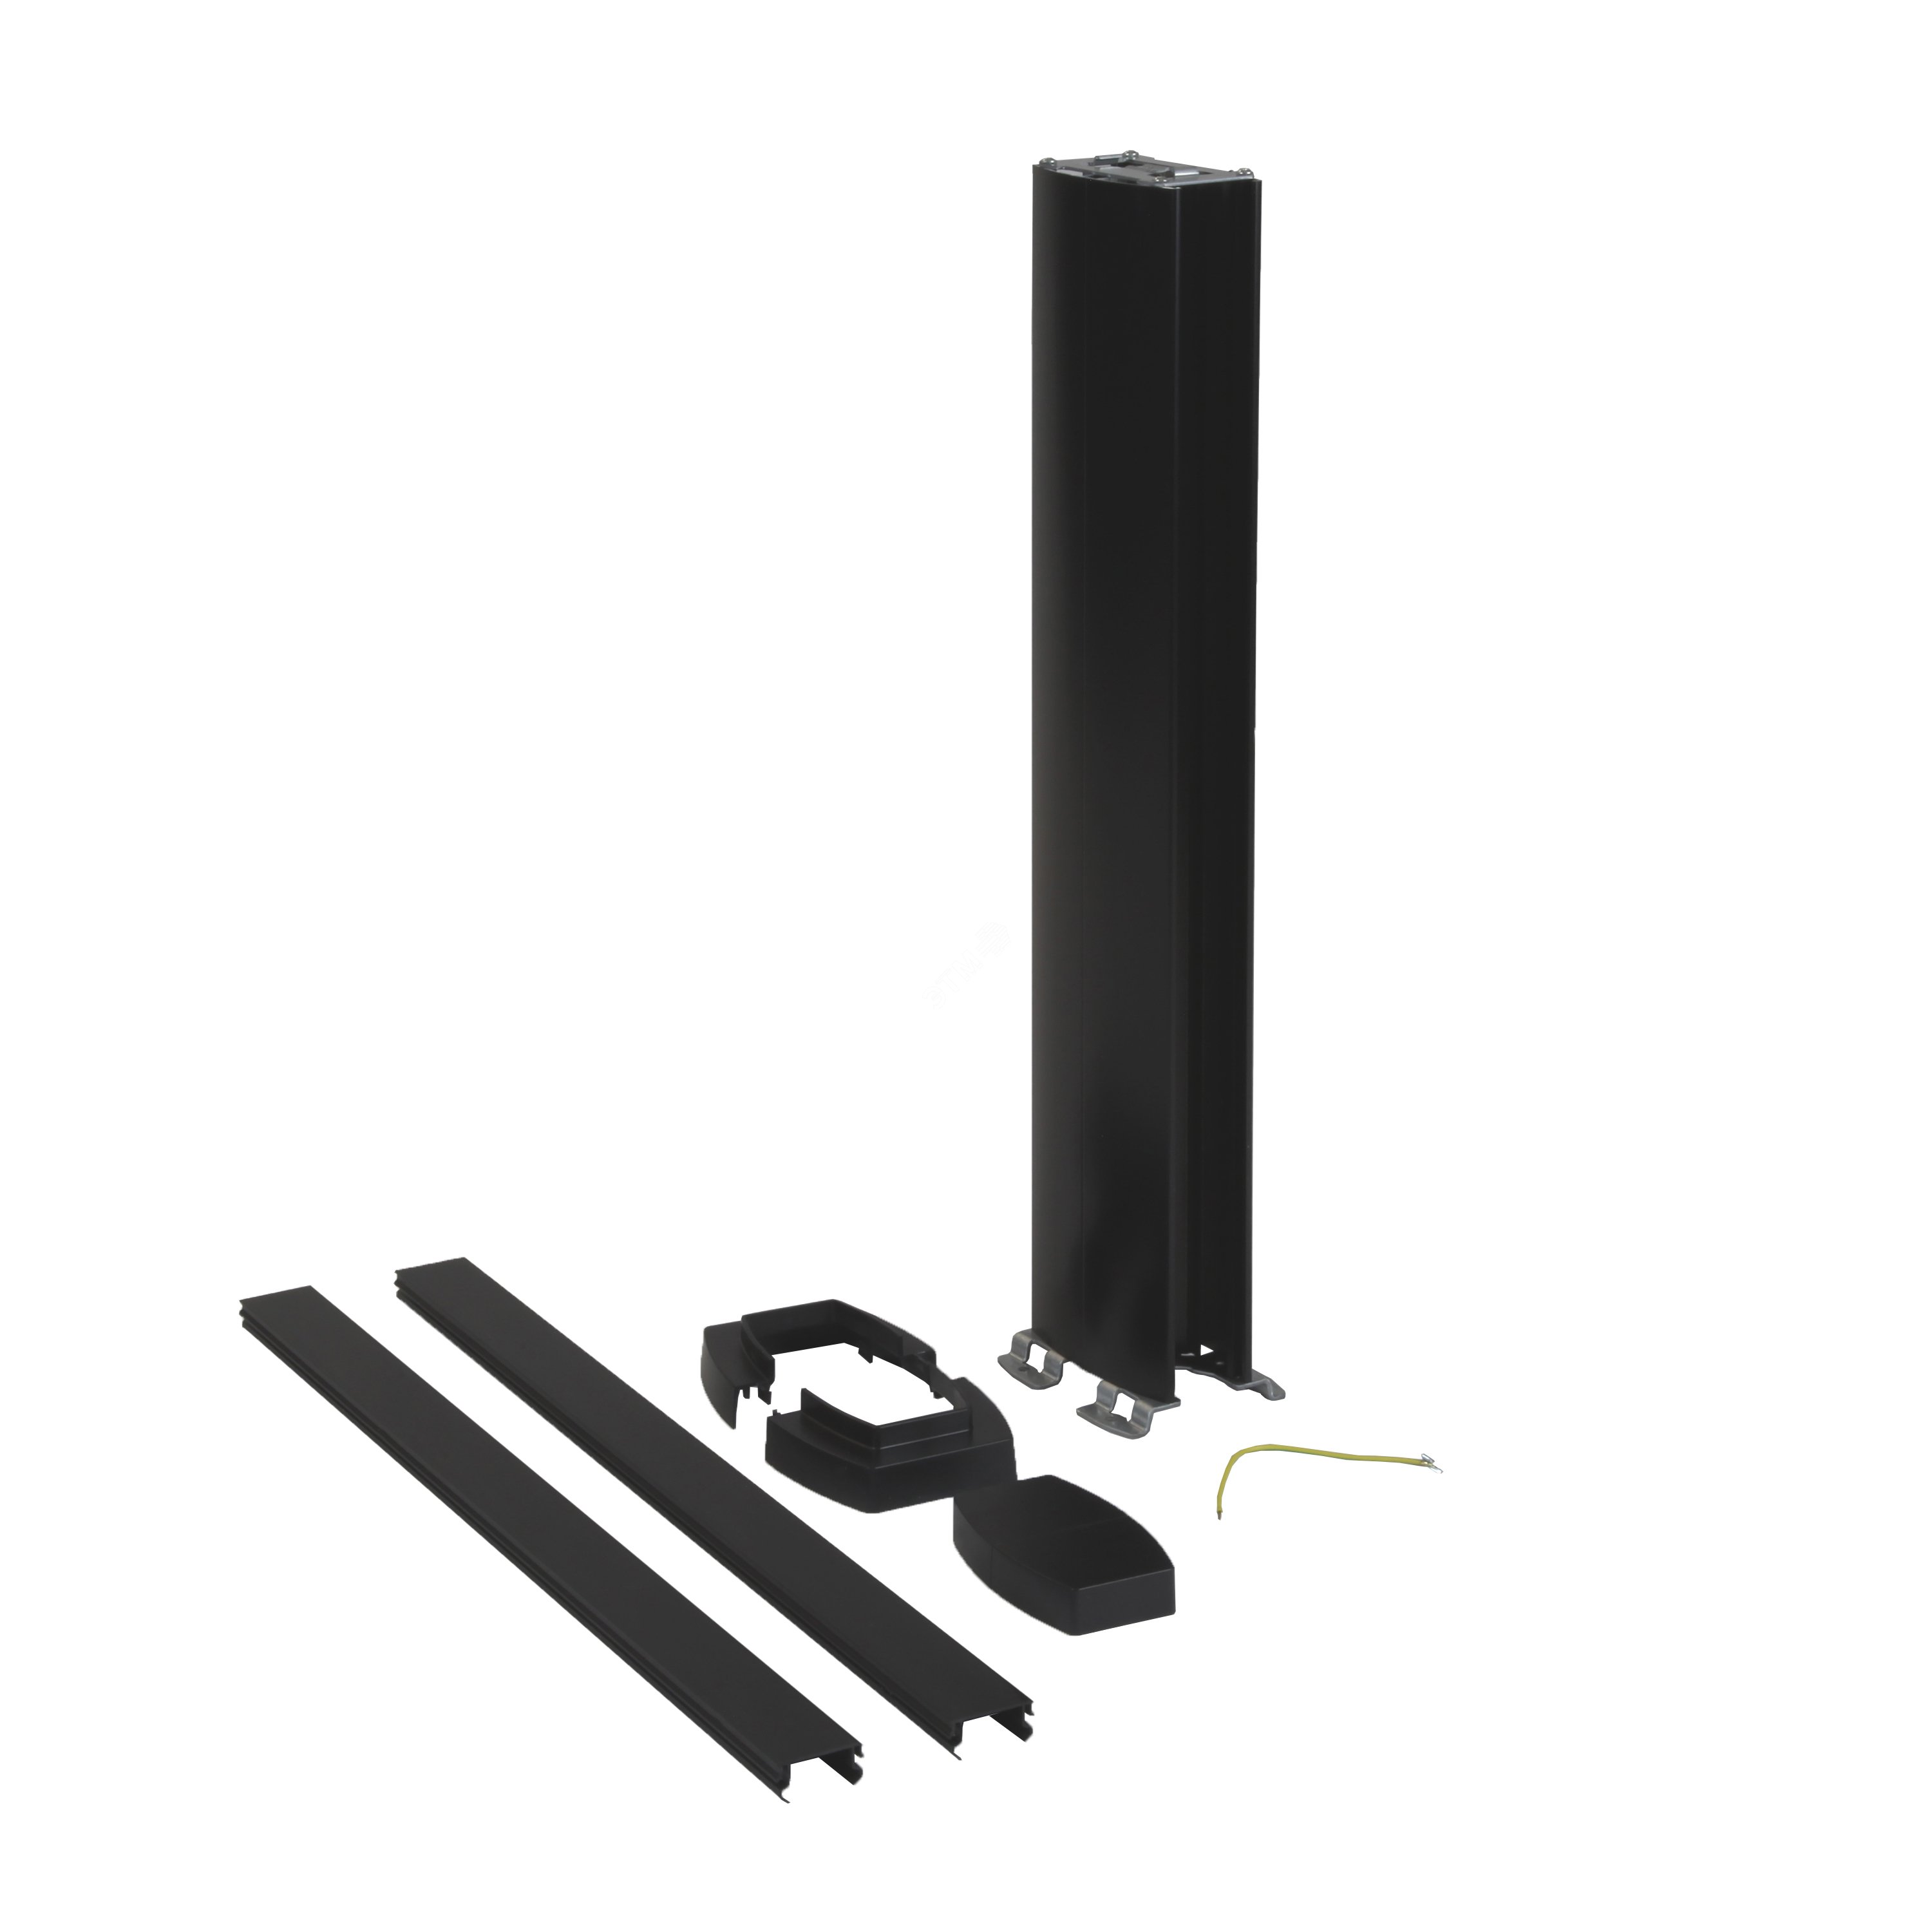 Snap-On мини-колонна алюминиевая с крышкой из пластика, 2 секции, высота 0,68 метра, цвет черный 653025 Legrand - превью 2